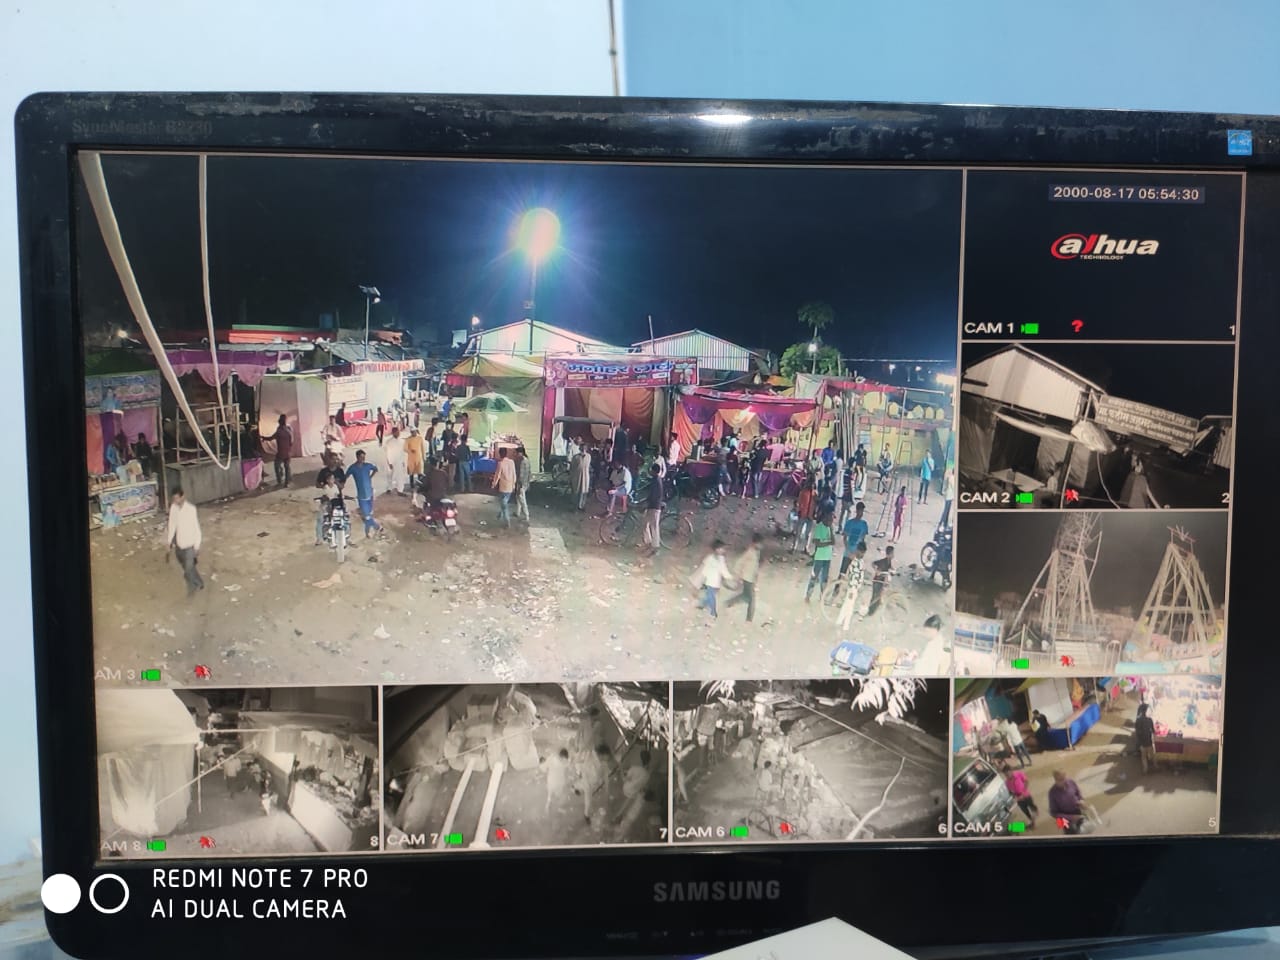 ऐतिहासिक बिसवां मेले में रहेगी सीसीटीवी कैमरे की नजर, सुरक्षा के दृष्टि से लगाए गए कैमरे | New India Times